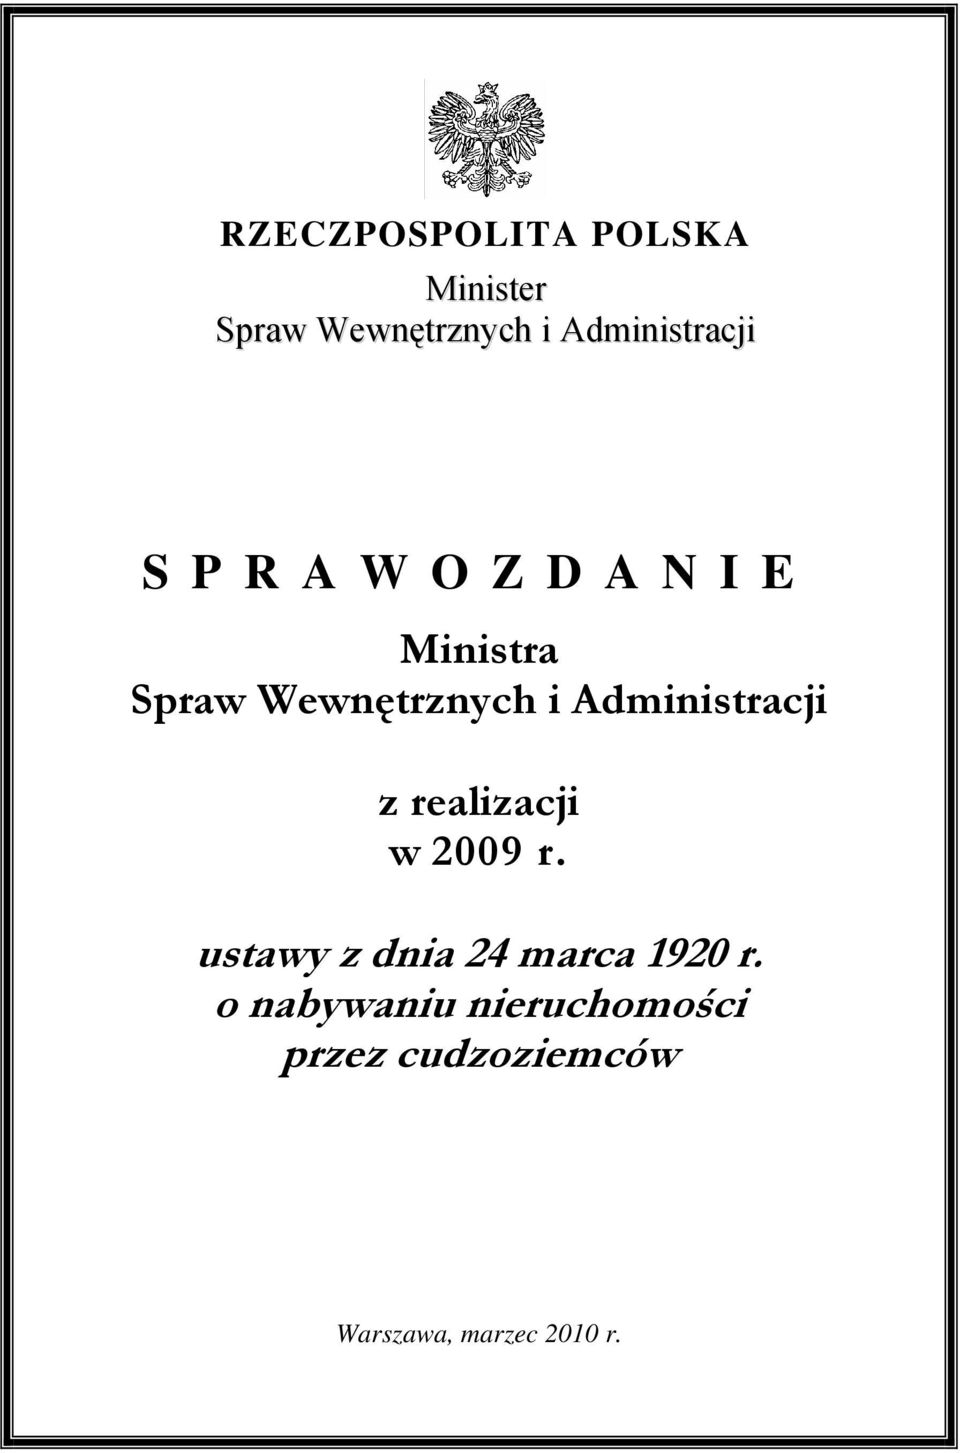 Administracji z realizacji w 2009 r.